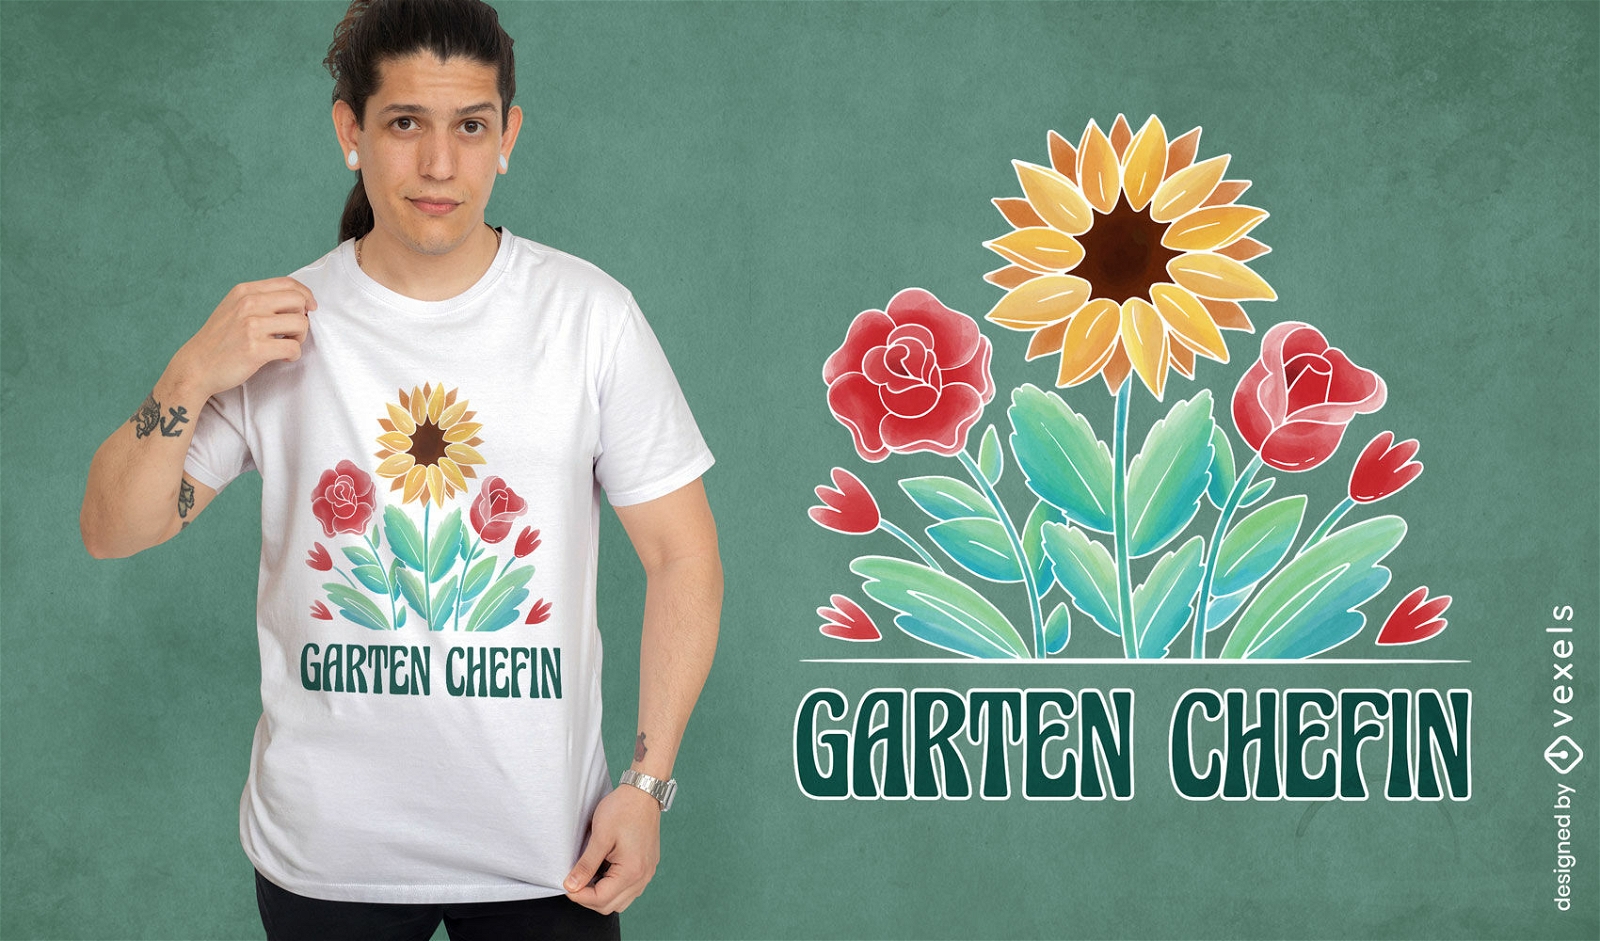 Sonnenblumen- und Rosengarten-T-Shirt-Design